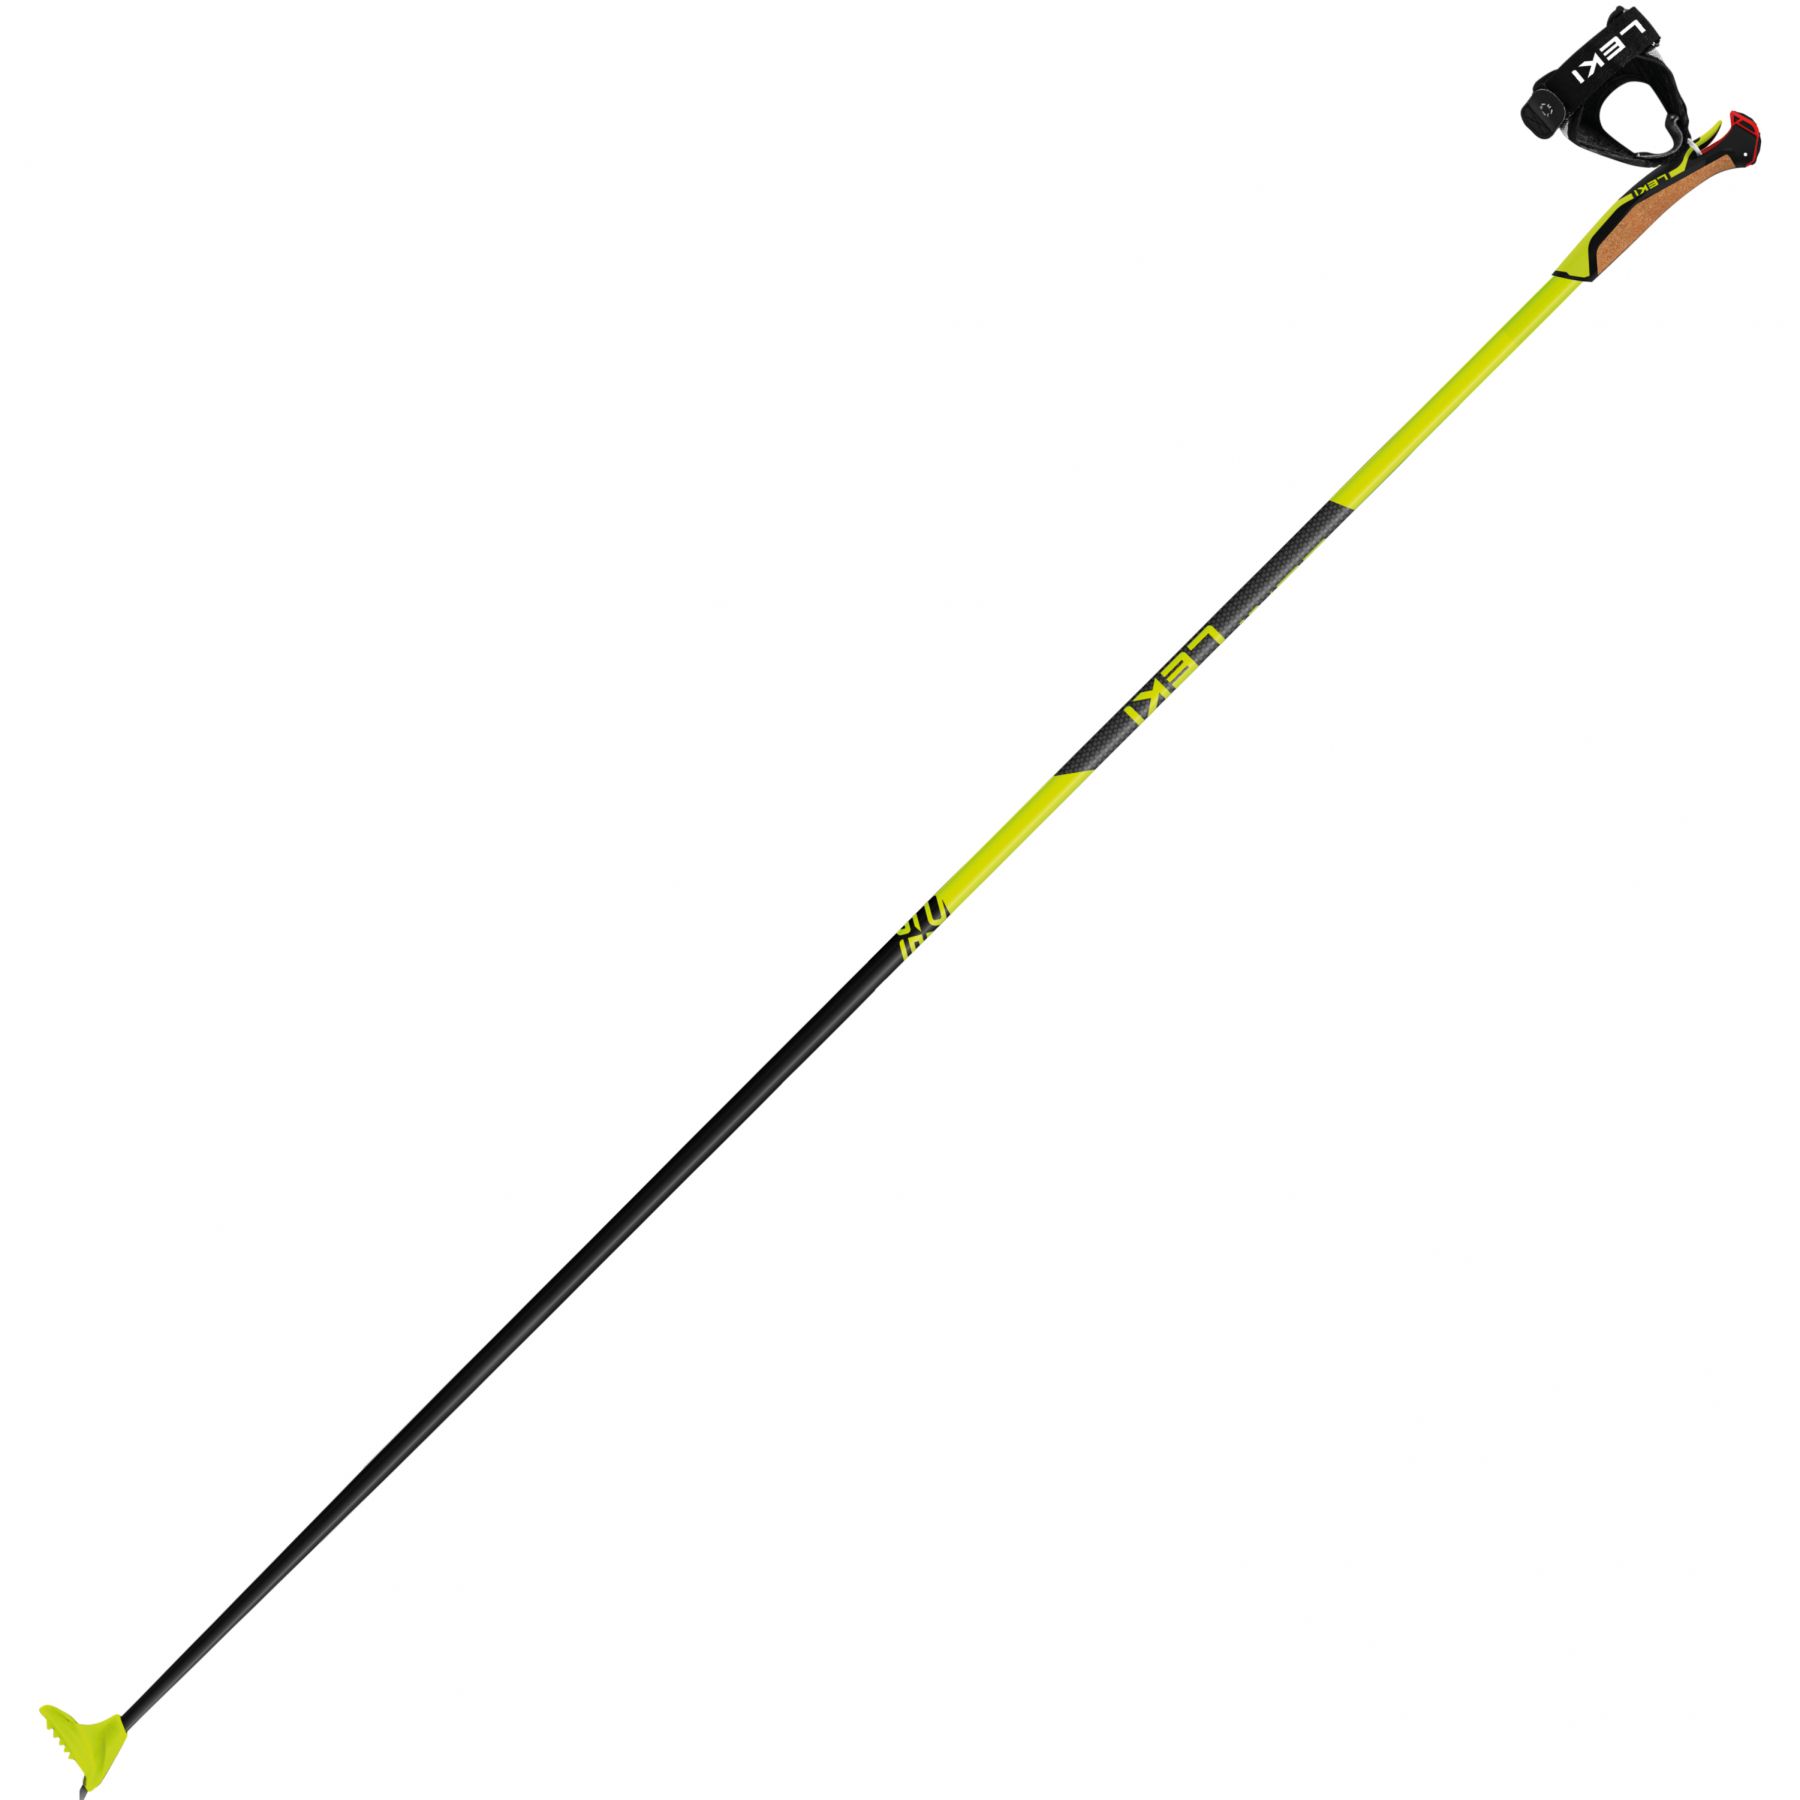 Brug Leki PRC 650, langrendsstave, sort/gul til en forbedret oplevelse